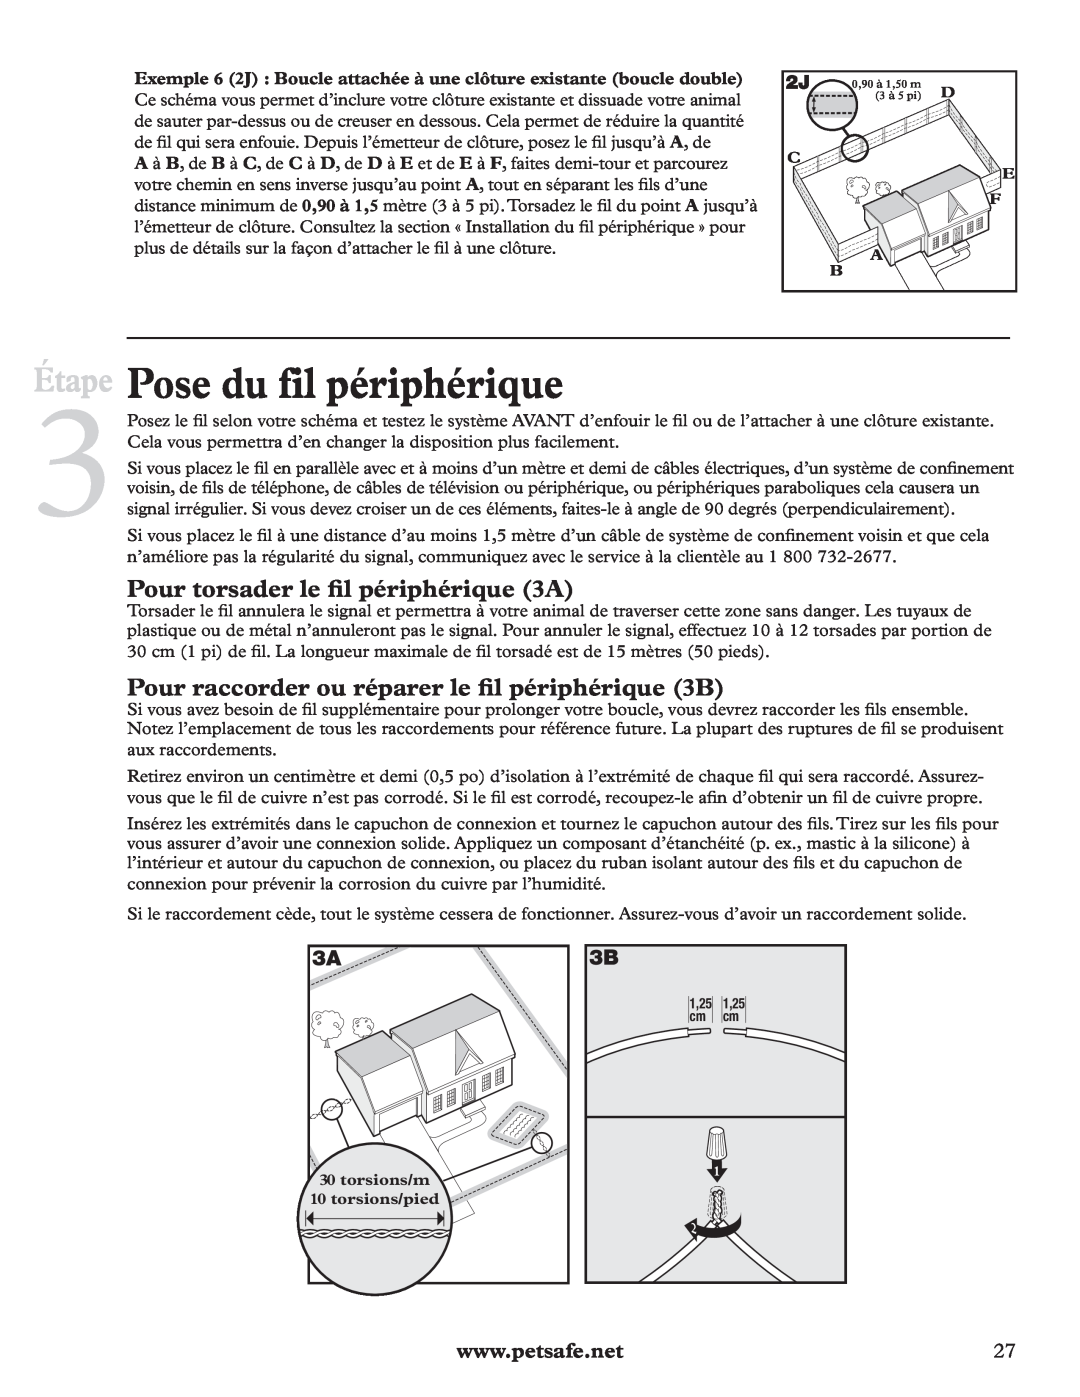 Petsafe RFA-200 manual Pose du fil périphérique, Pour torsader le ﬁl périphérique 3A, Étape 